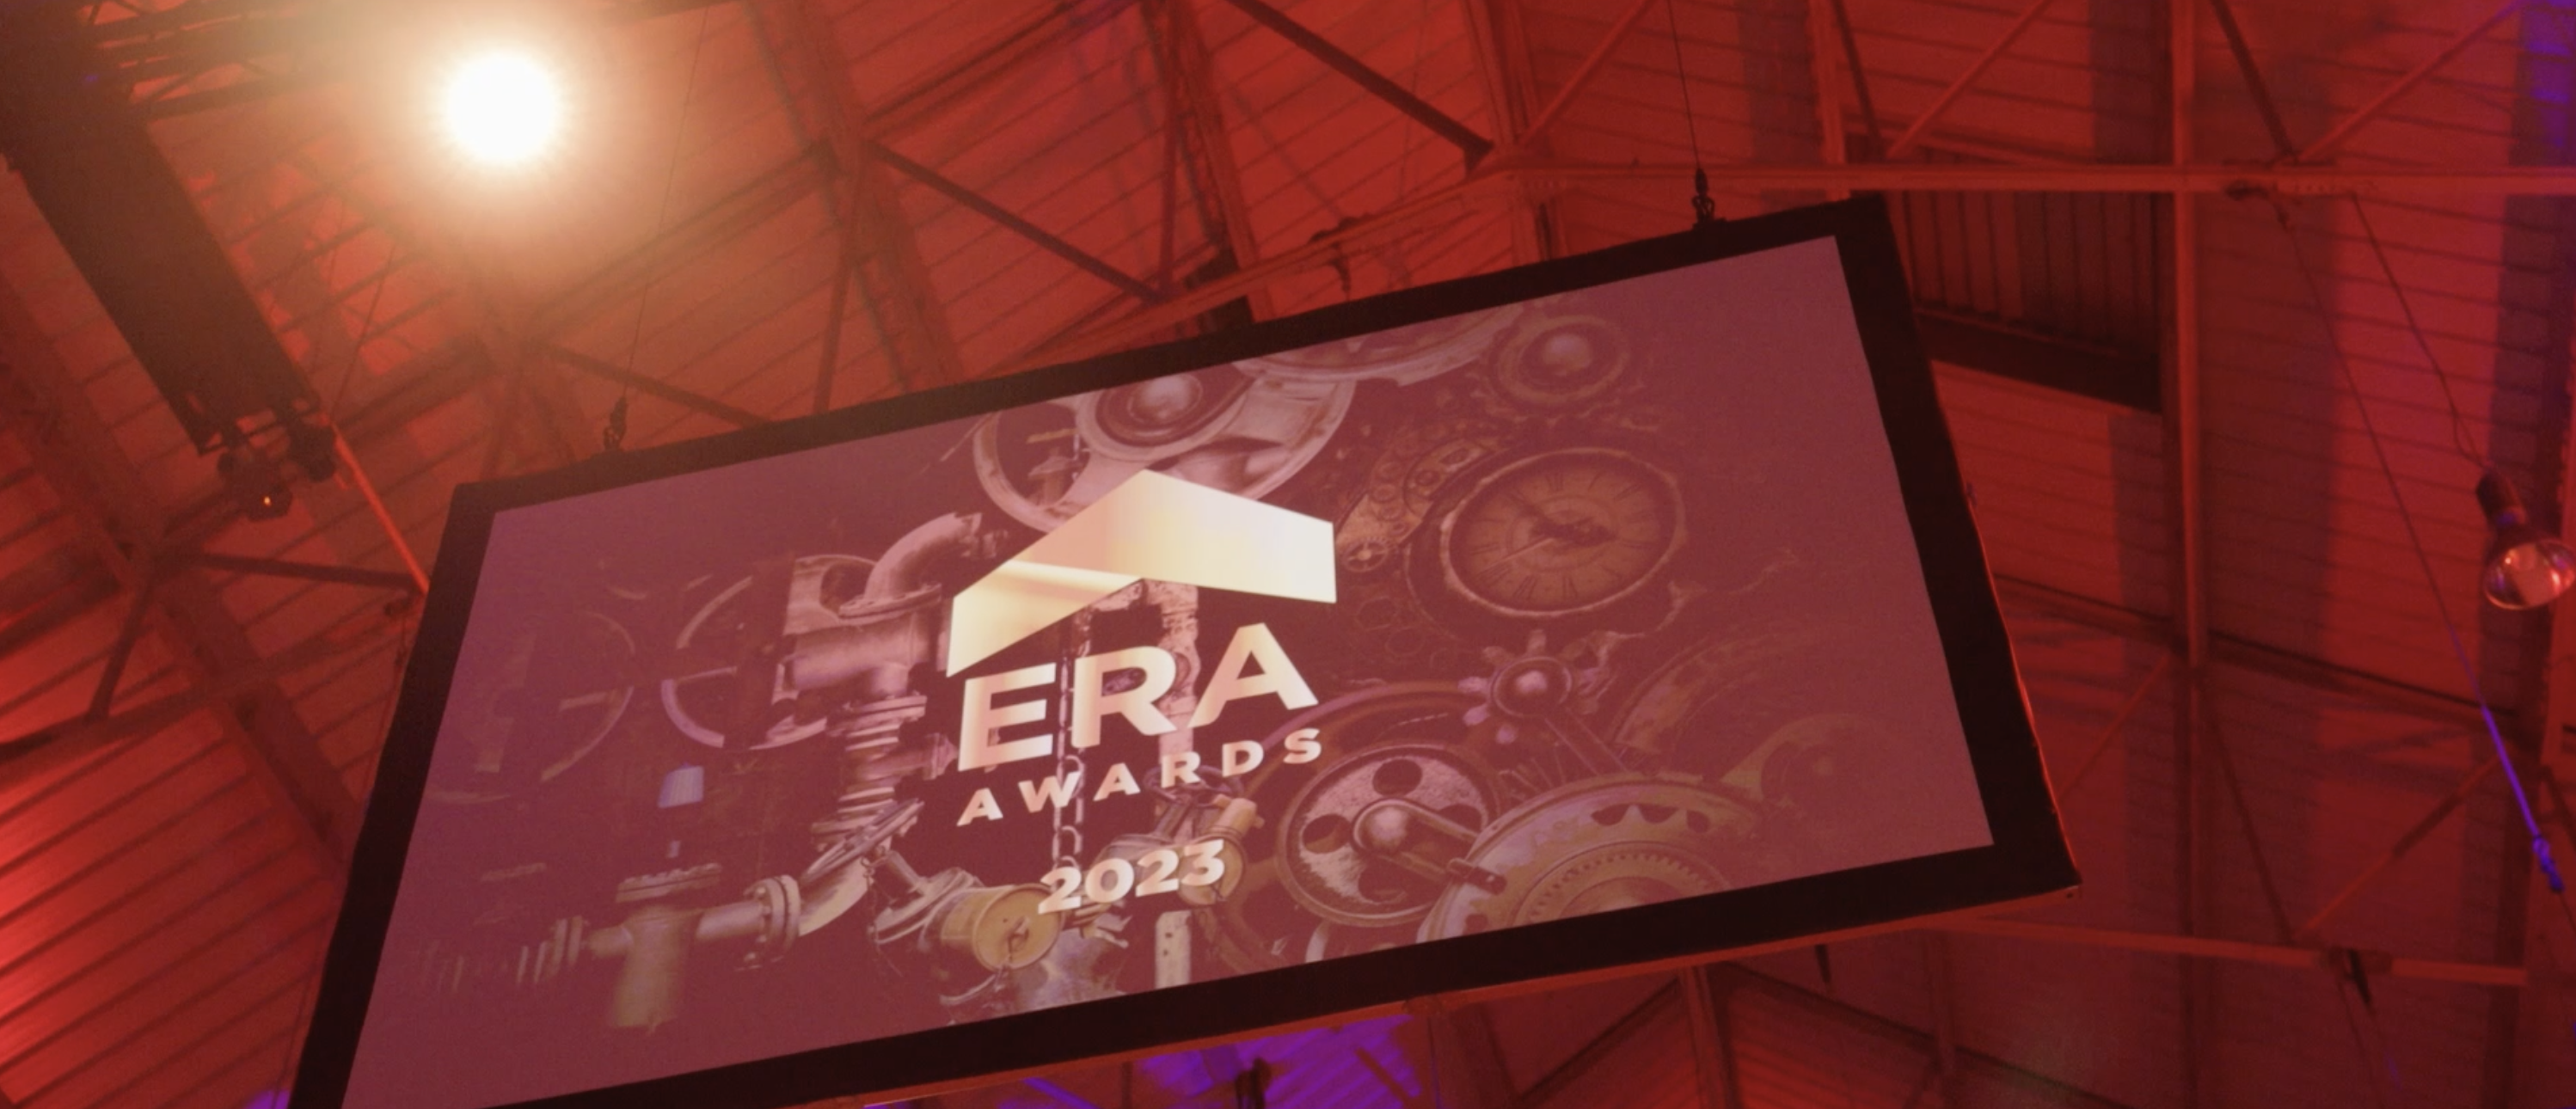 Scherm met ERA Awards 2023 op.